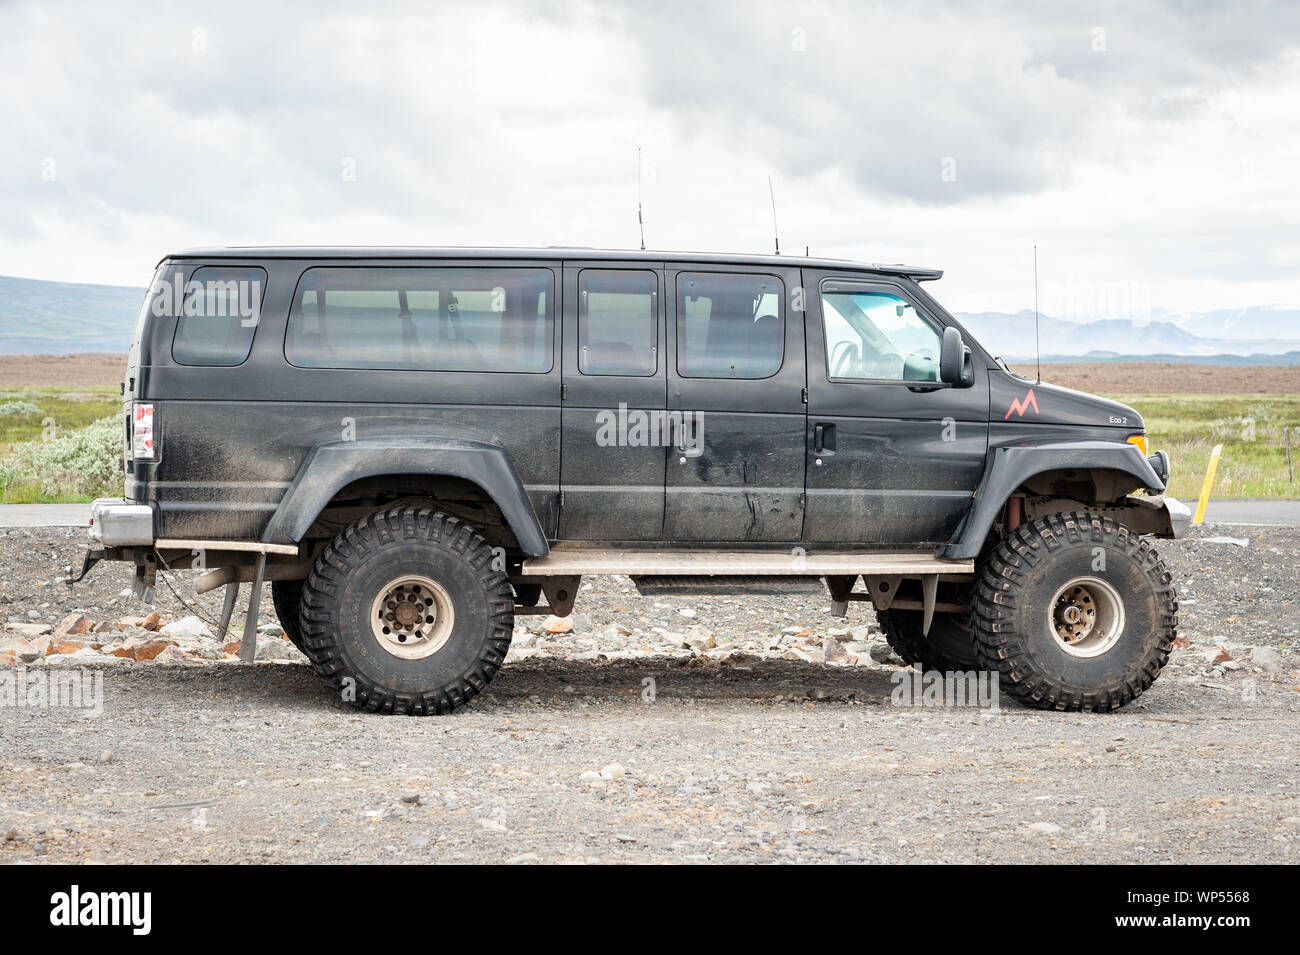 Super Jeep, Island Stockfotografie - Alamy